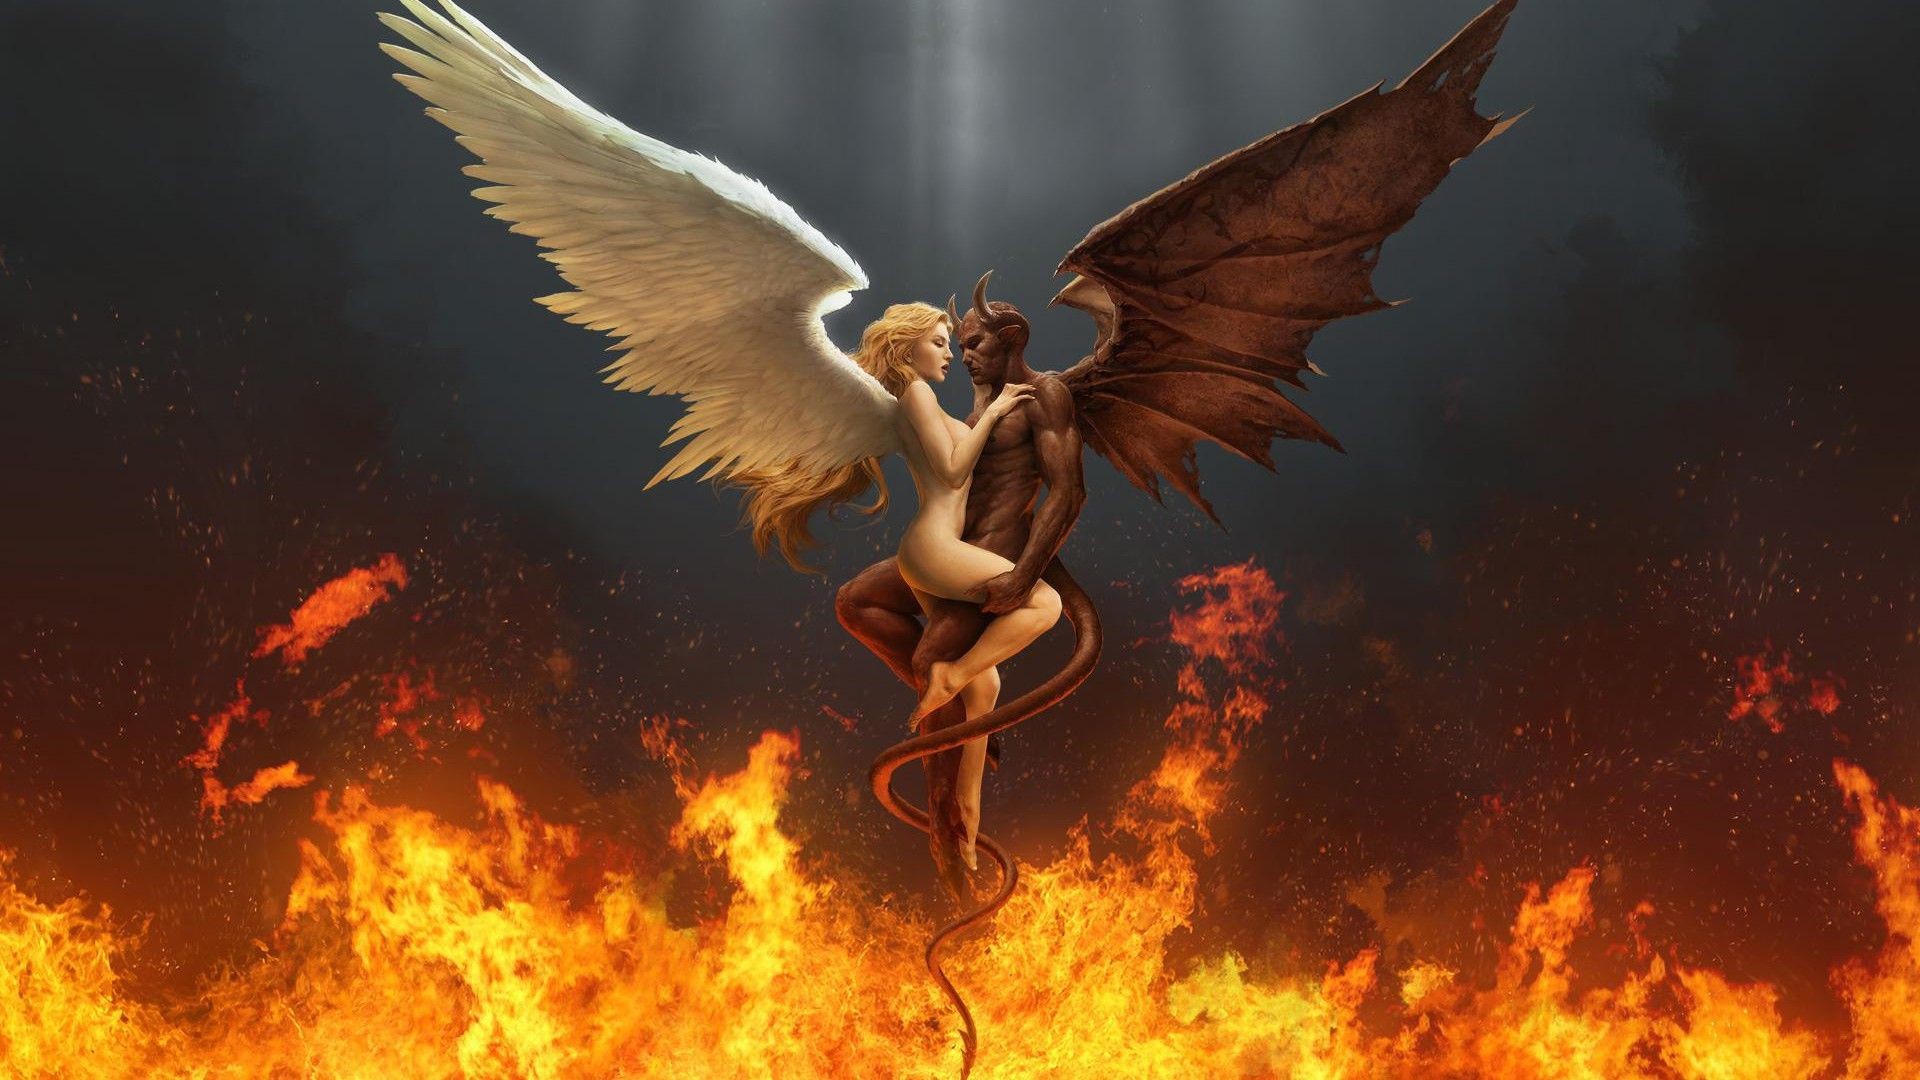 1920x1080 Digital Art HD Fire Demon Angel Wallpaper - WallpaperTube